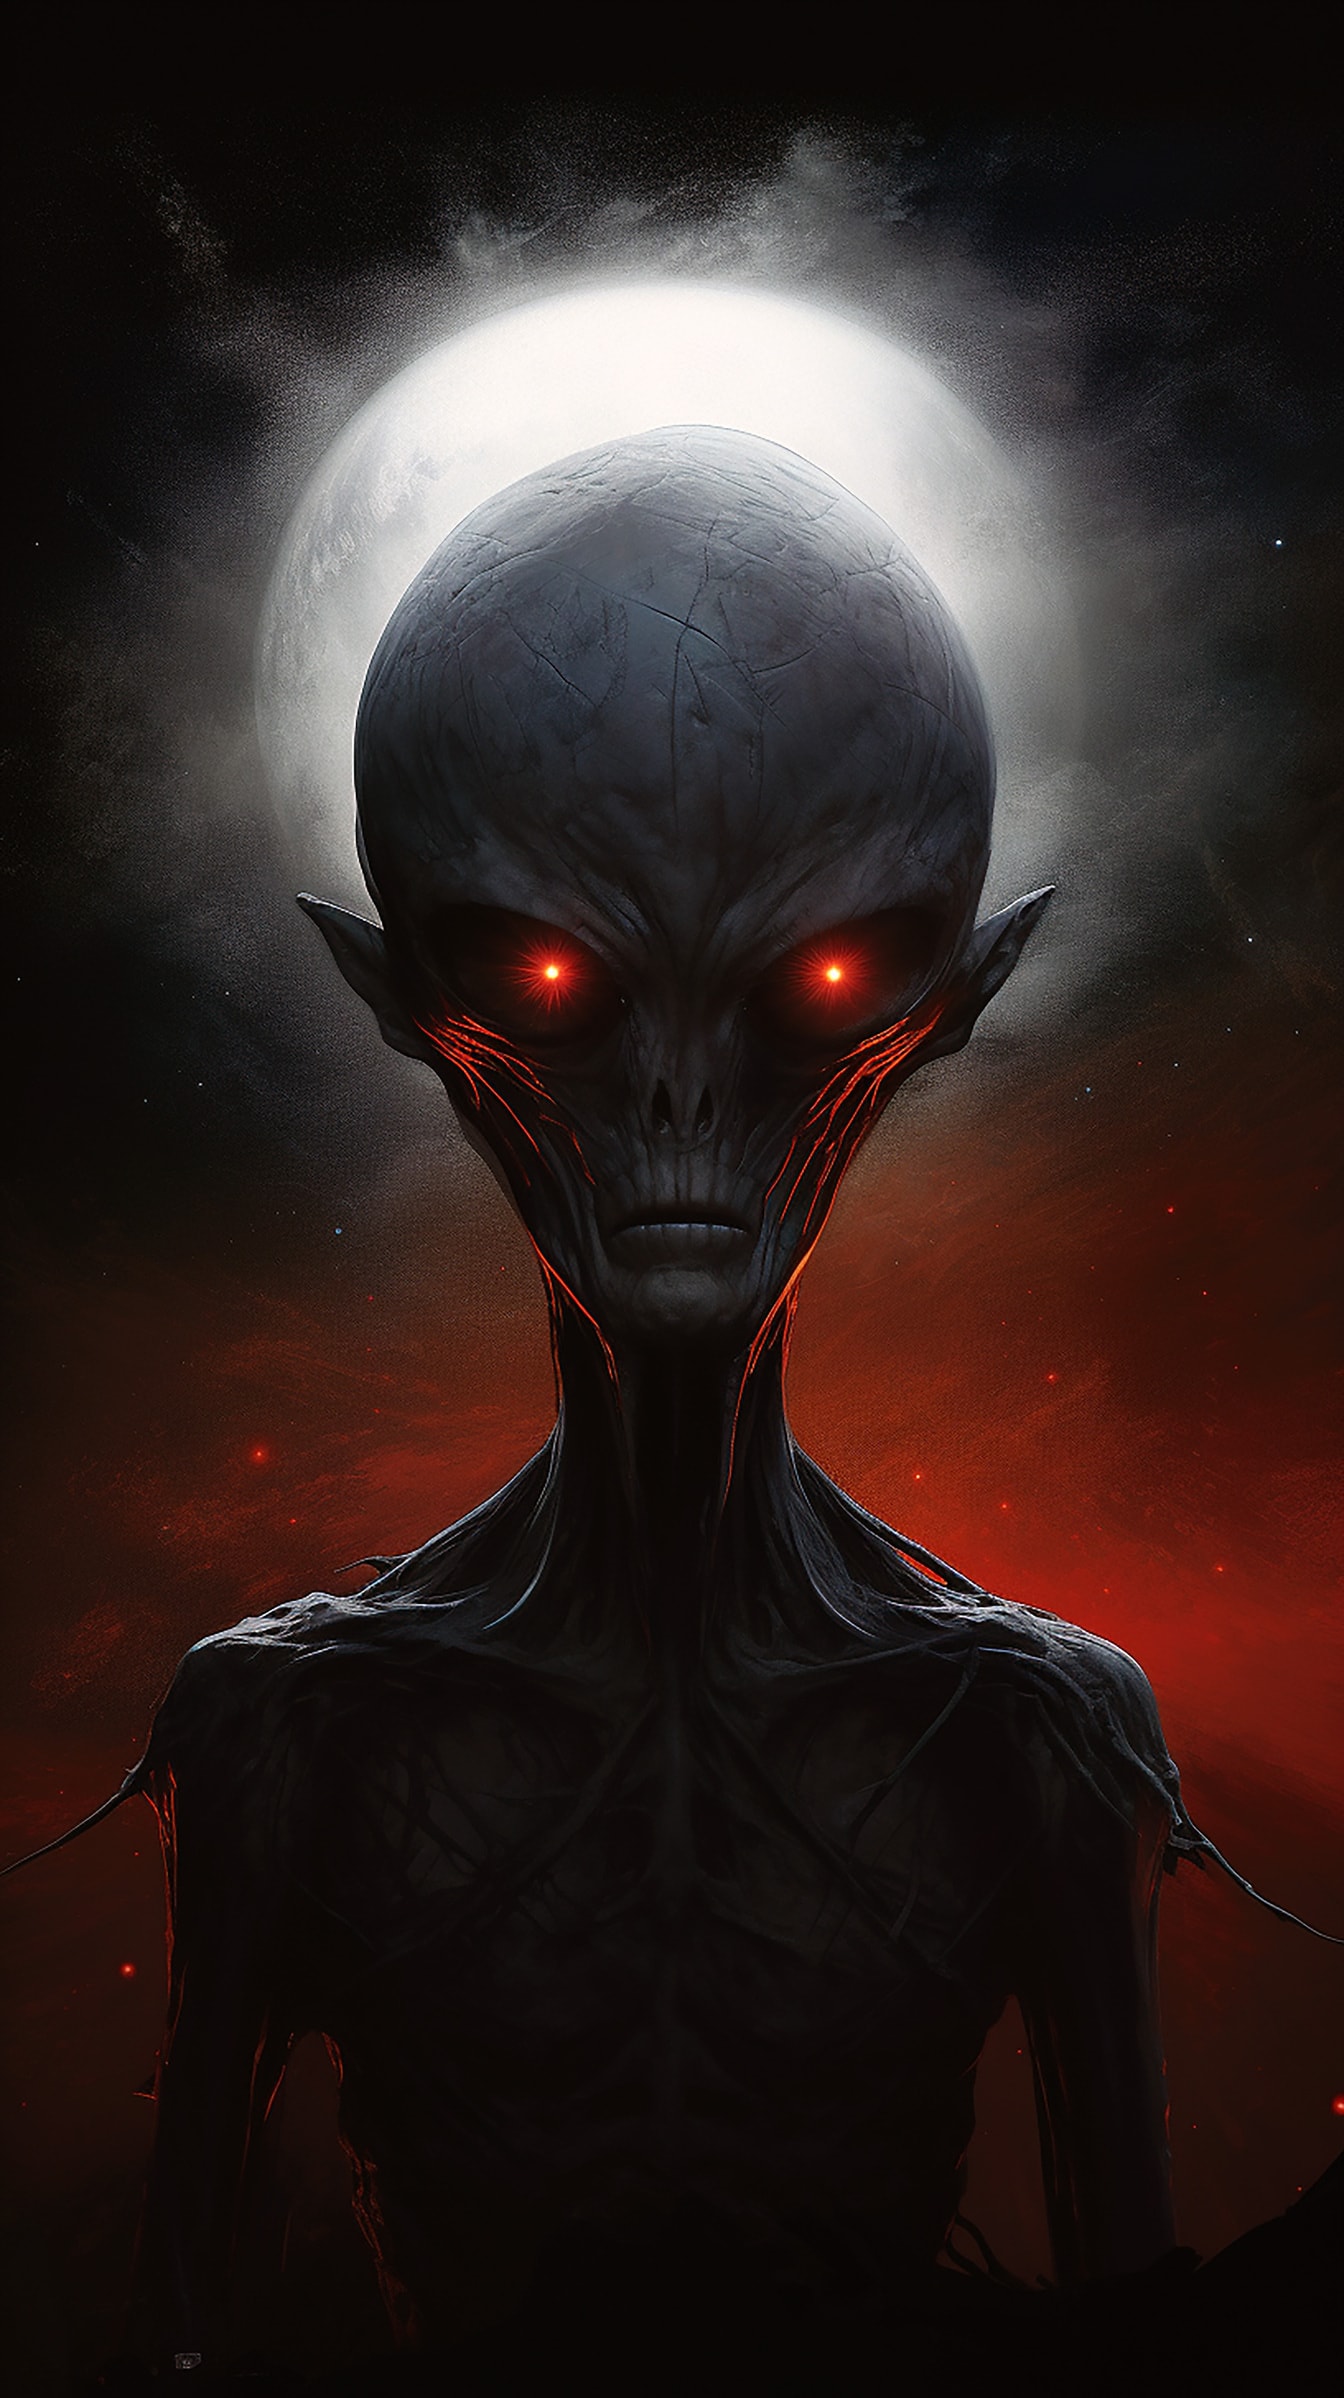 Hororový portrét mimozemšťana s tmavě červenýma očima a štíhlým tělem